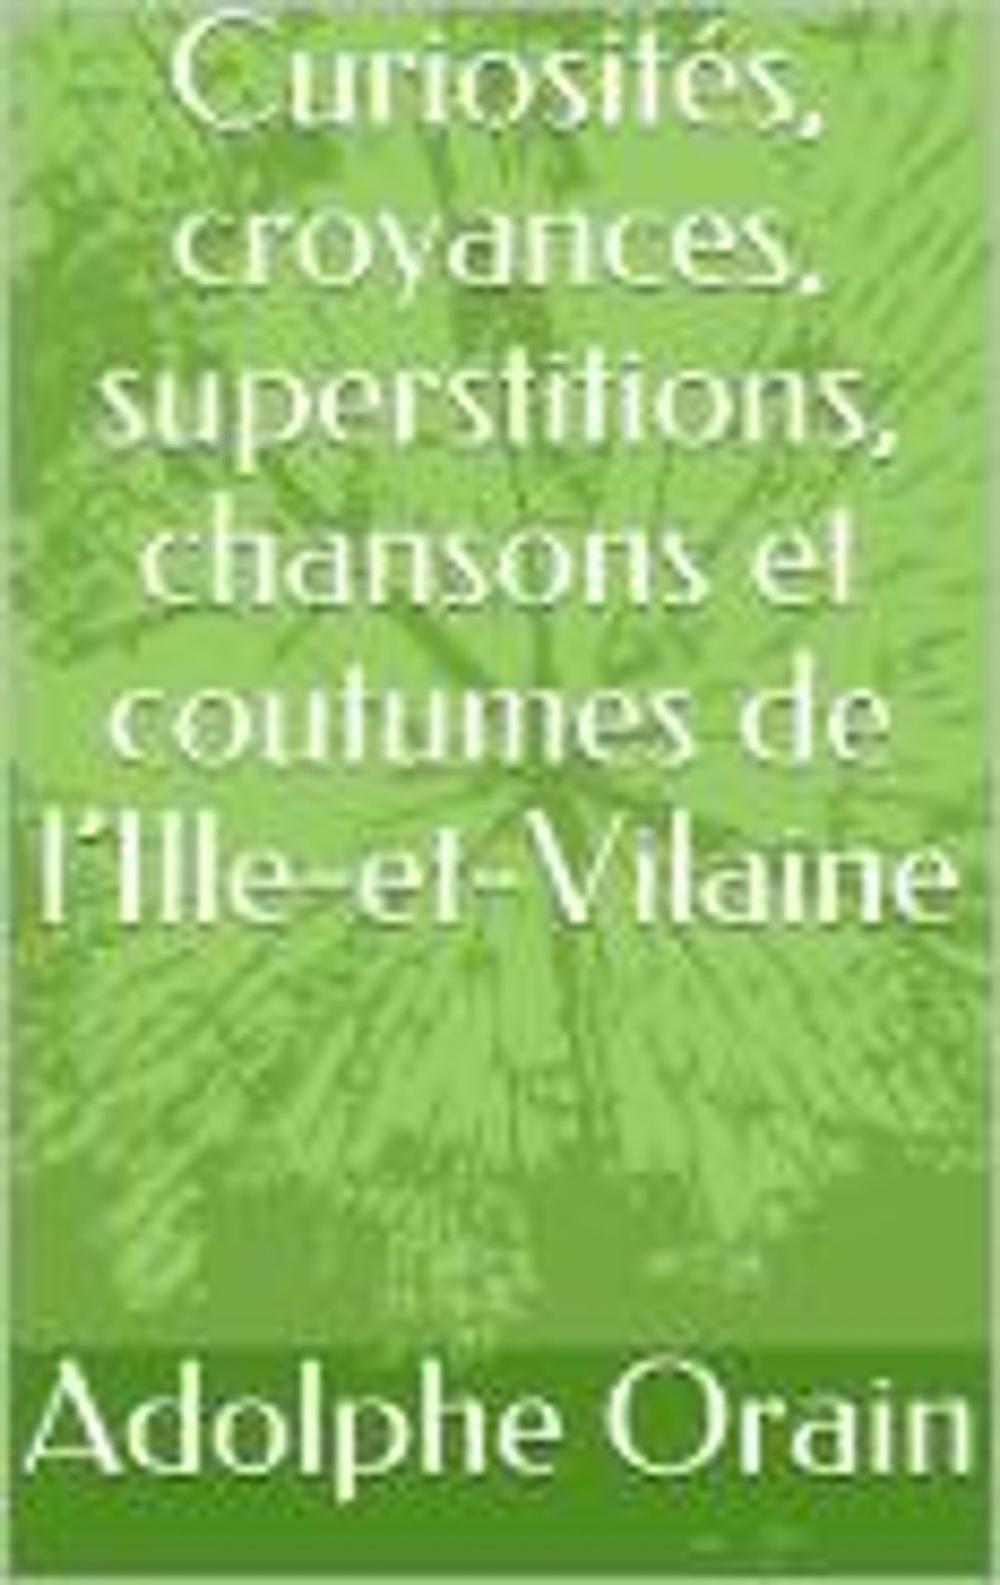 Big bigCover of Curiosités, croyances, superstitions, chansons et coutumes de l’Ille-et-Vilaine